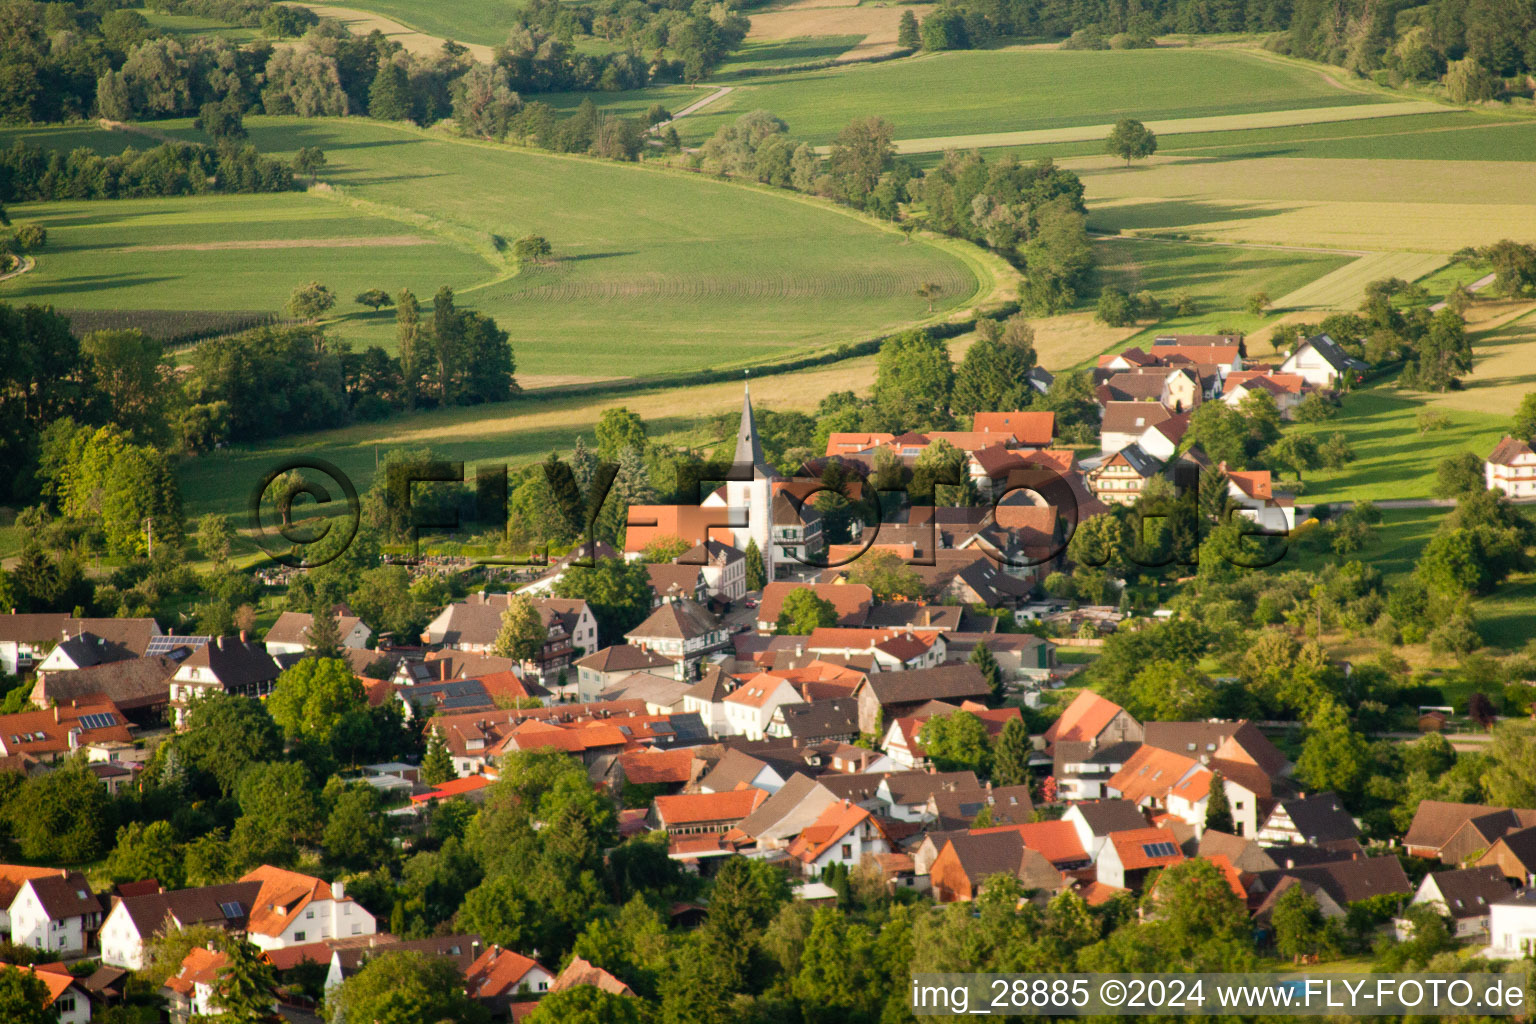 Luftbild von Dorf - Ansicht im Ortsteil Diersheim in Rheinau im Bundesland Baden-Württemberg, Deutschland